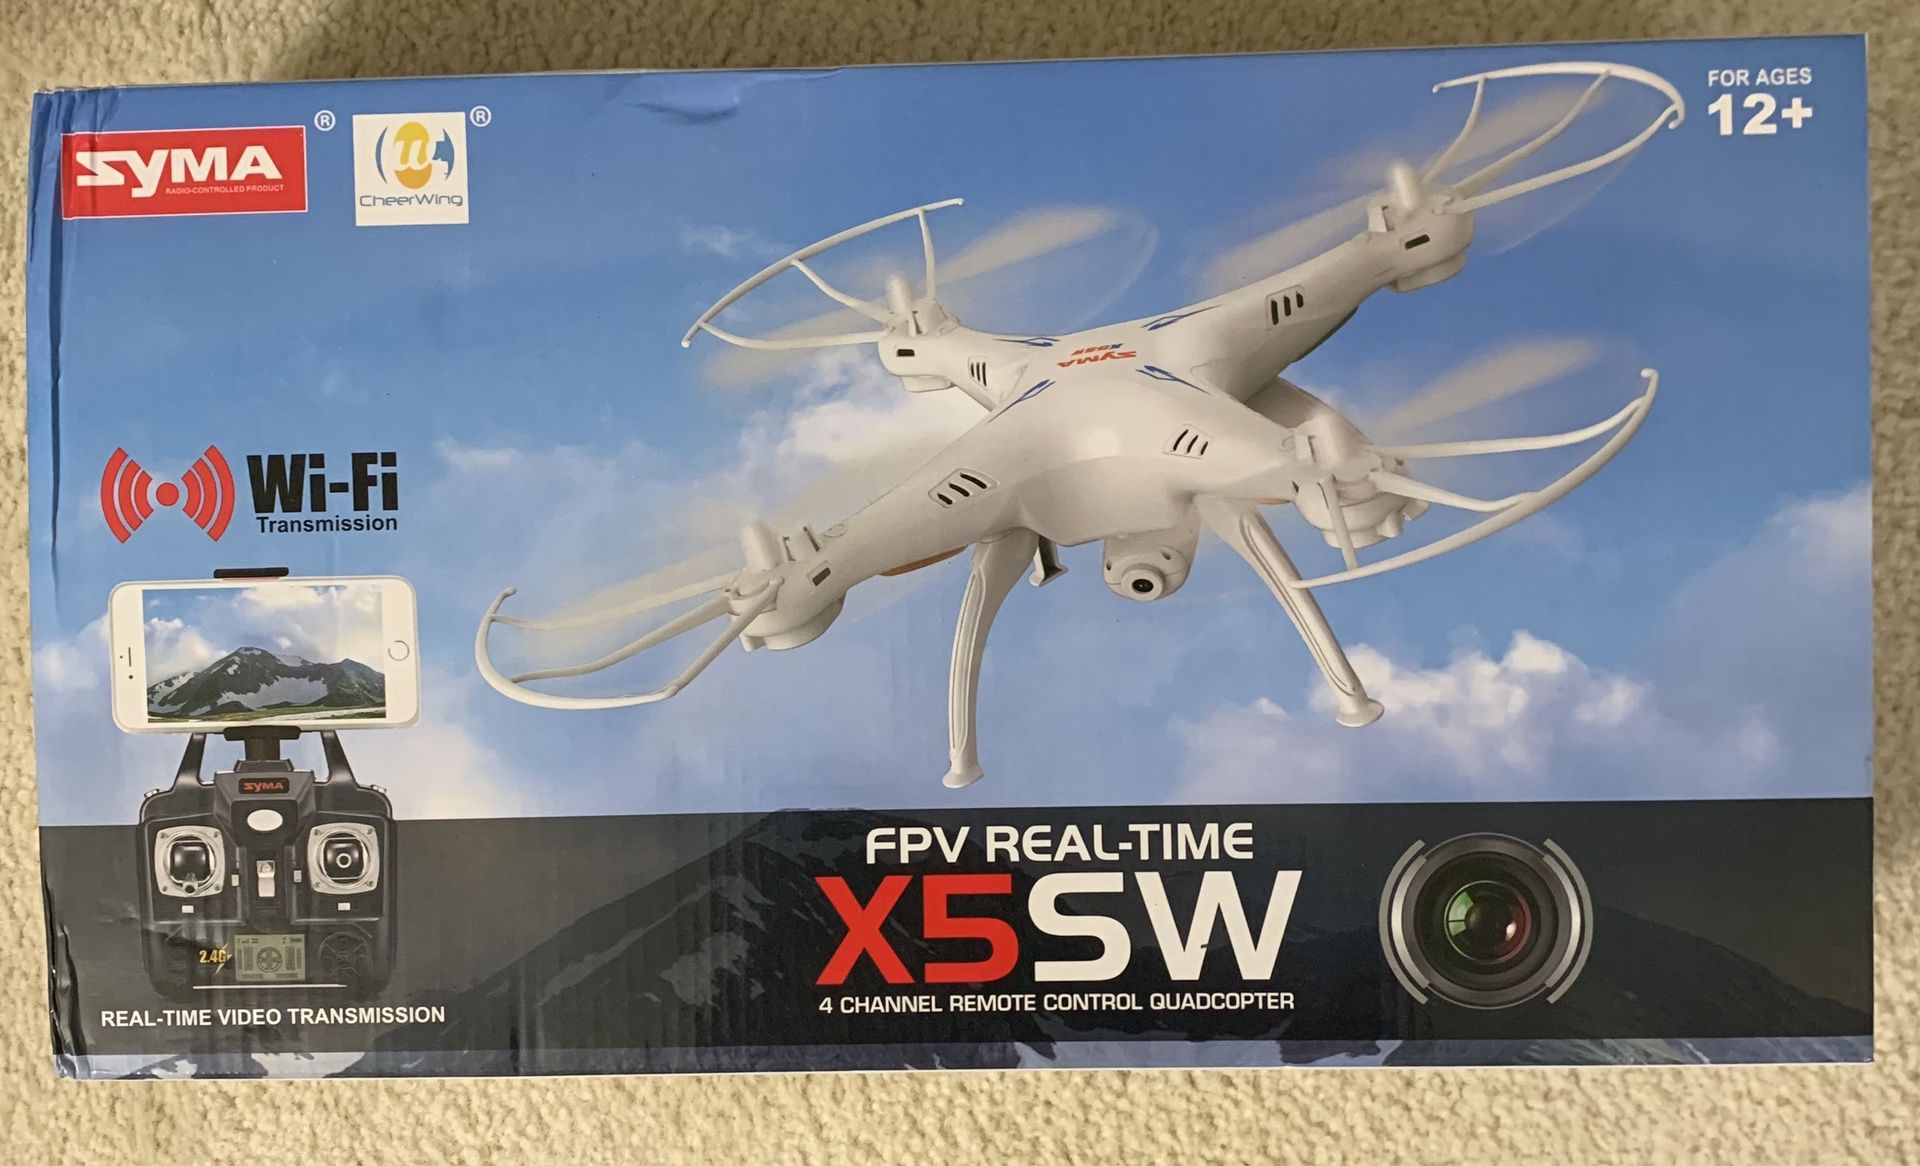 Syma X5SW 4 Channel Remote Control Quadcopter Drone